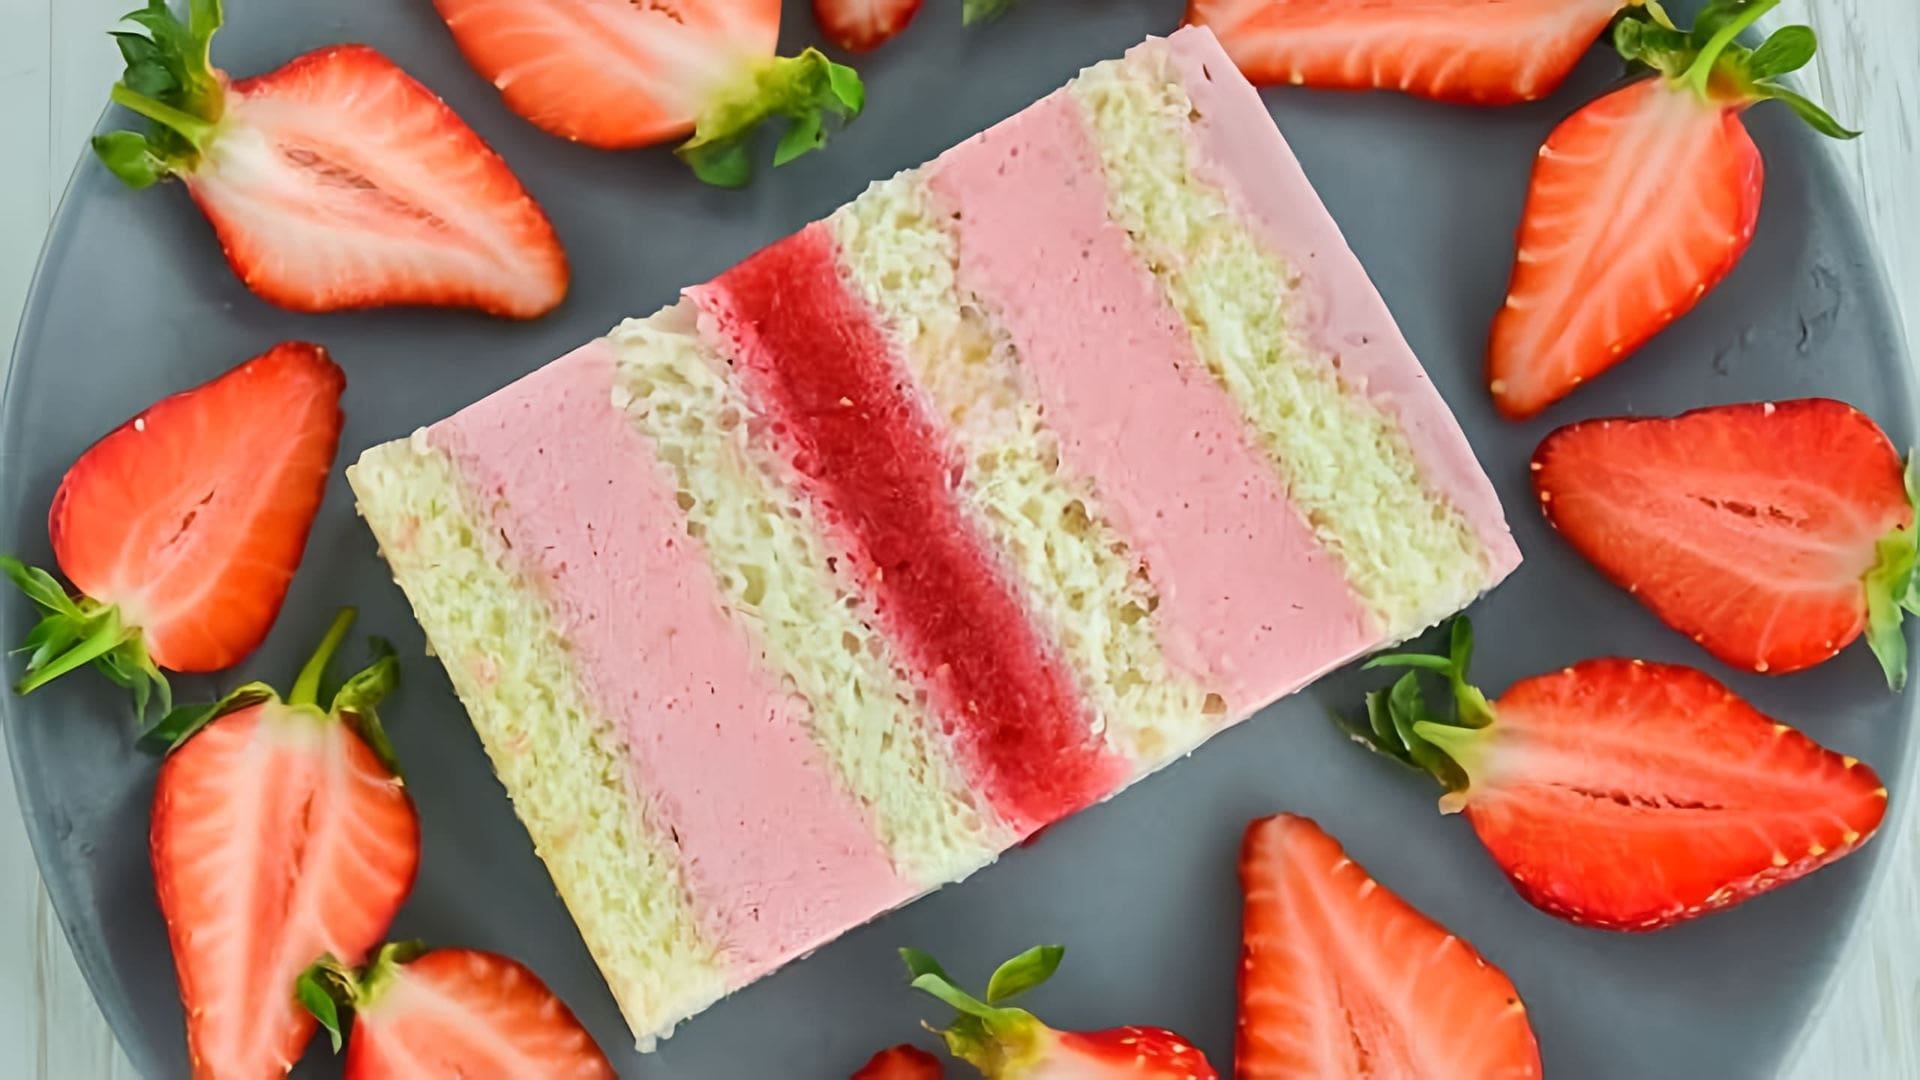 В этом видео демонстрируется рецепт приготовления нежного клубничного торта с муссом